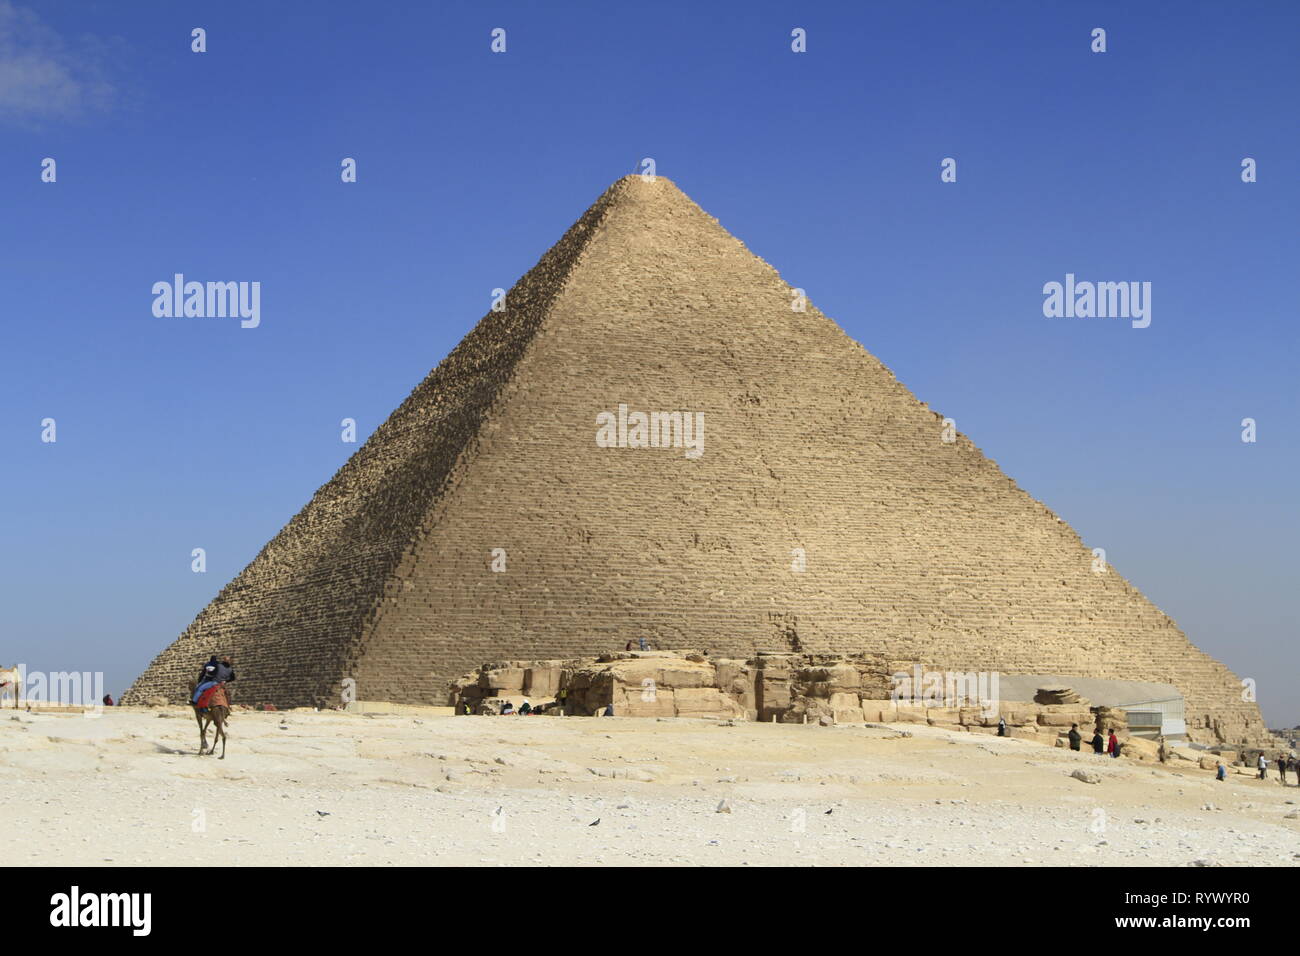 Les cavaliers de chameau au premier plan et la Grande Pyramide d'Égypte en arrière-plan, complexe Pyramide de Gizeh, Le Caire, Egypte Banque D'Images